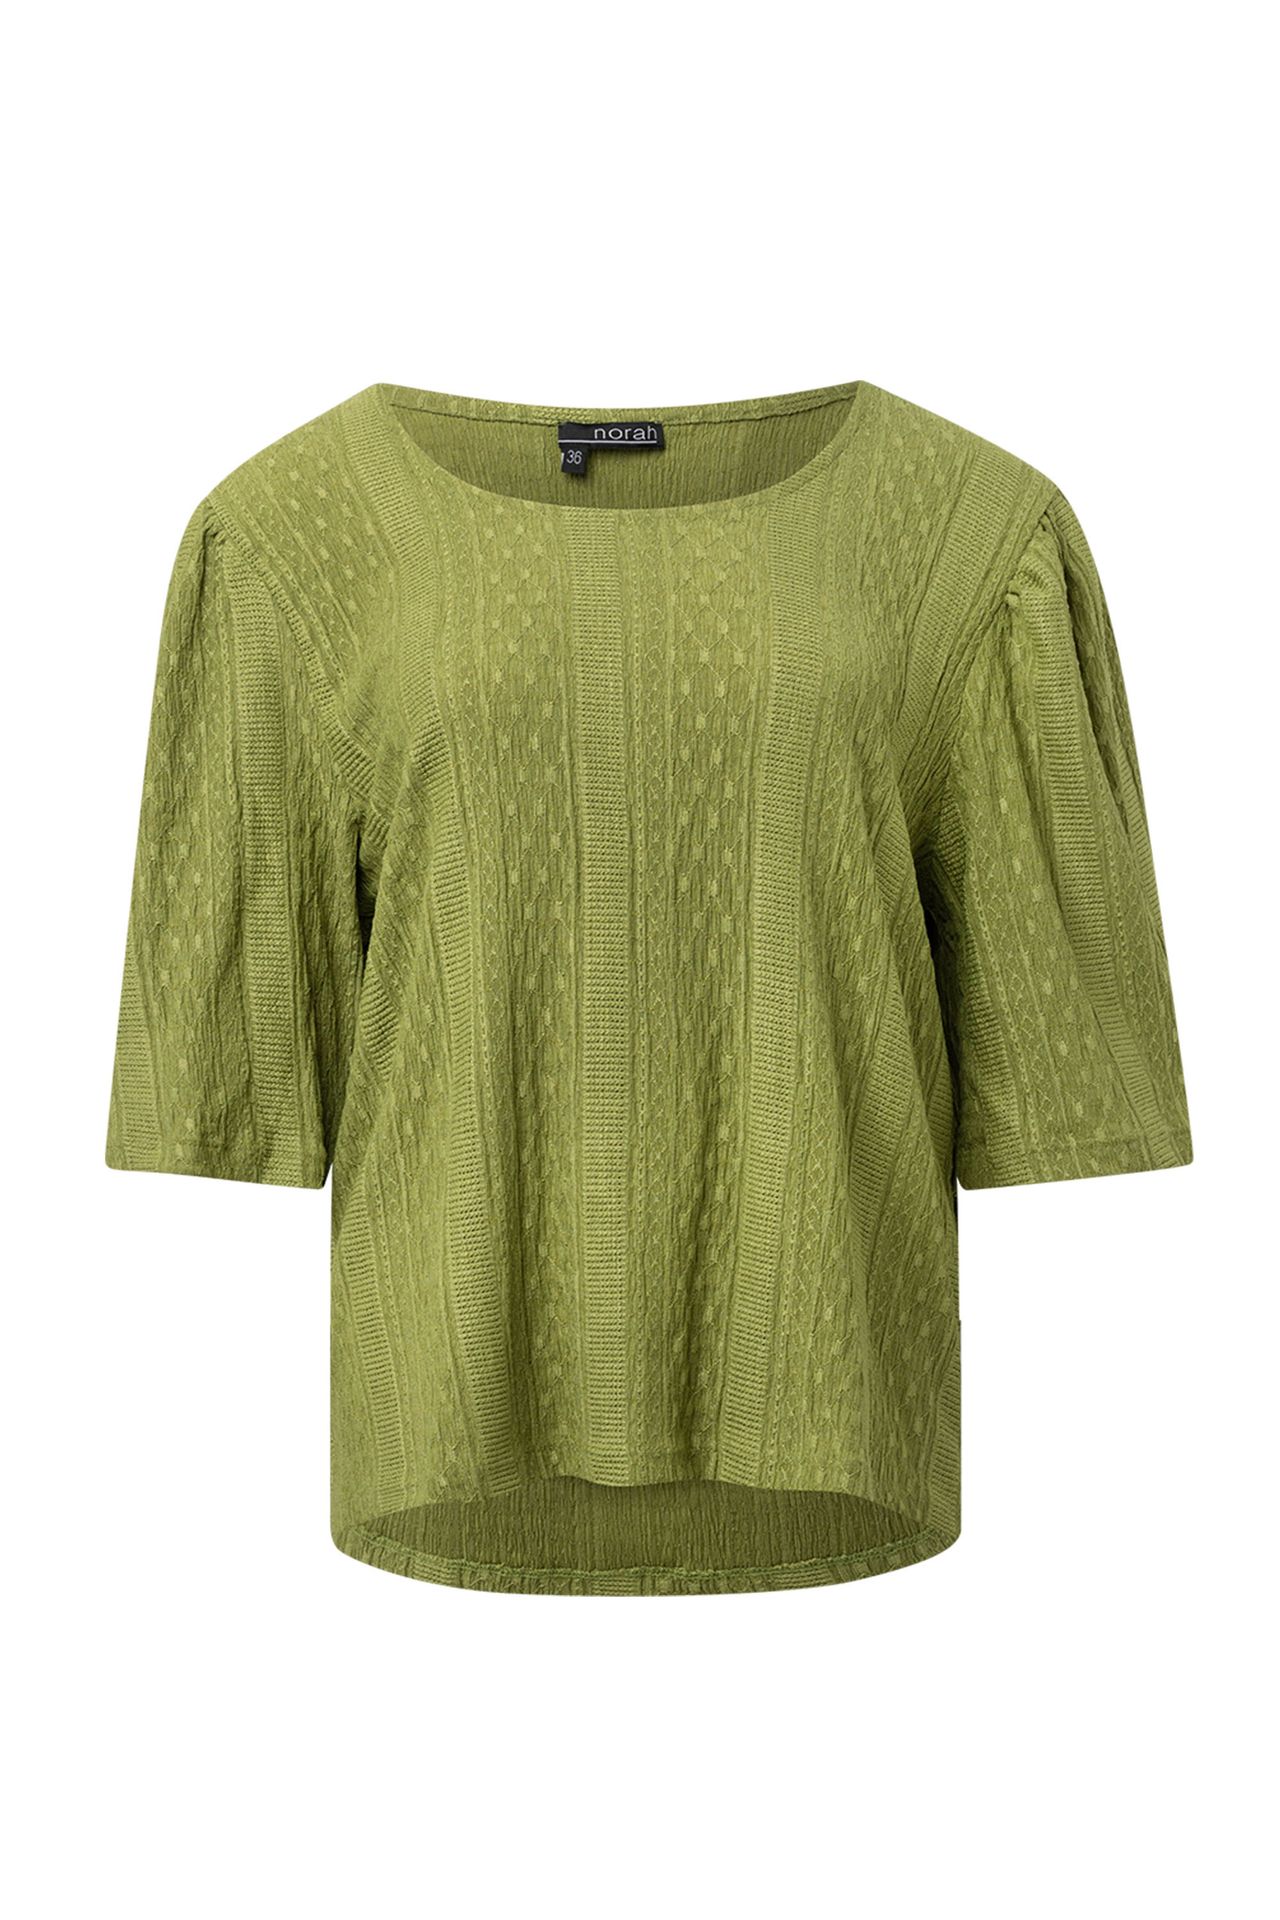 Norah Groen shirt olive green 214873-594